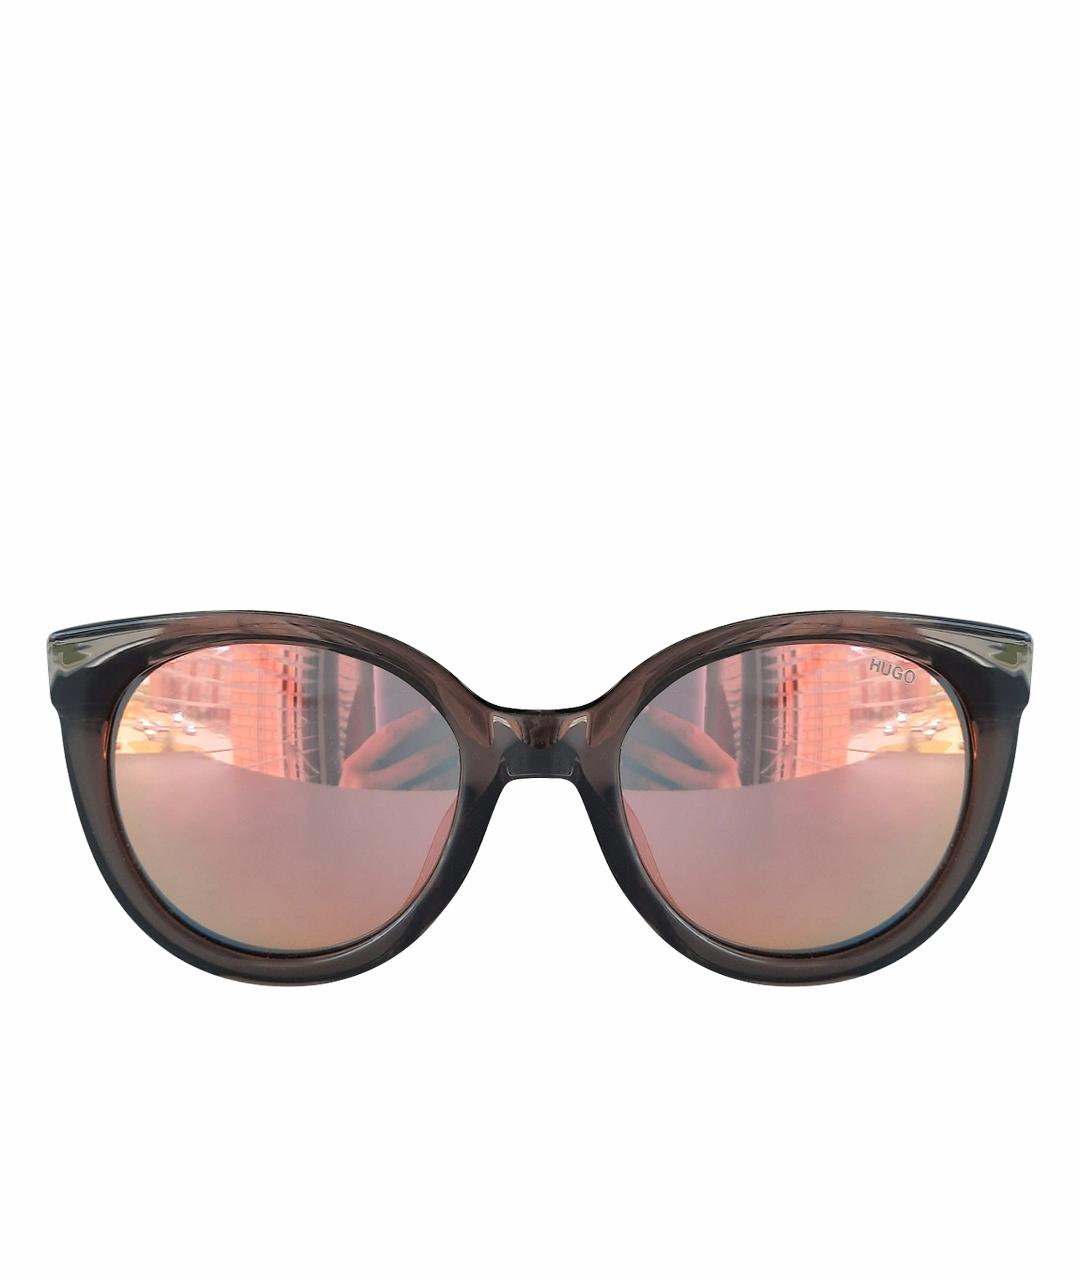 HUGO BOSS Серые солнцезащитные очки, фото 1